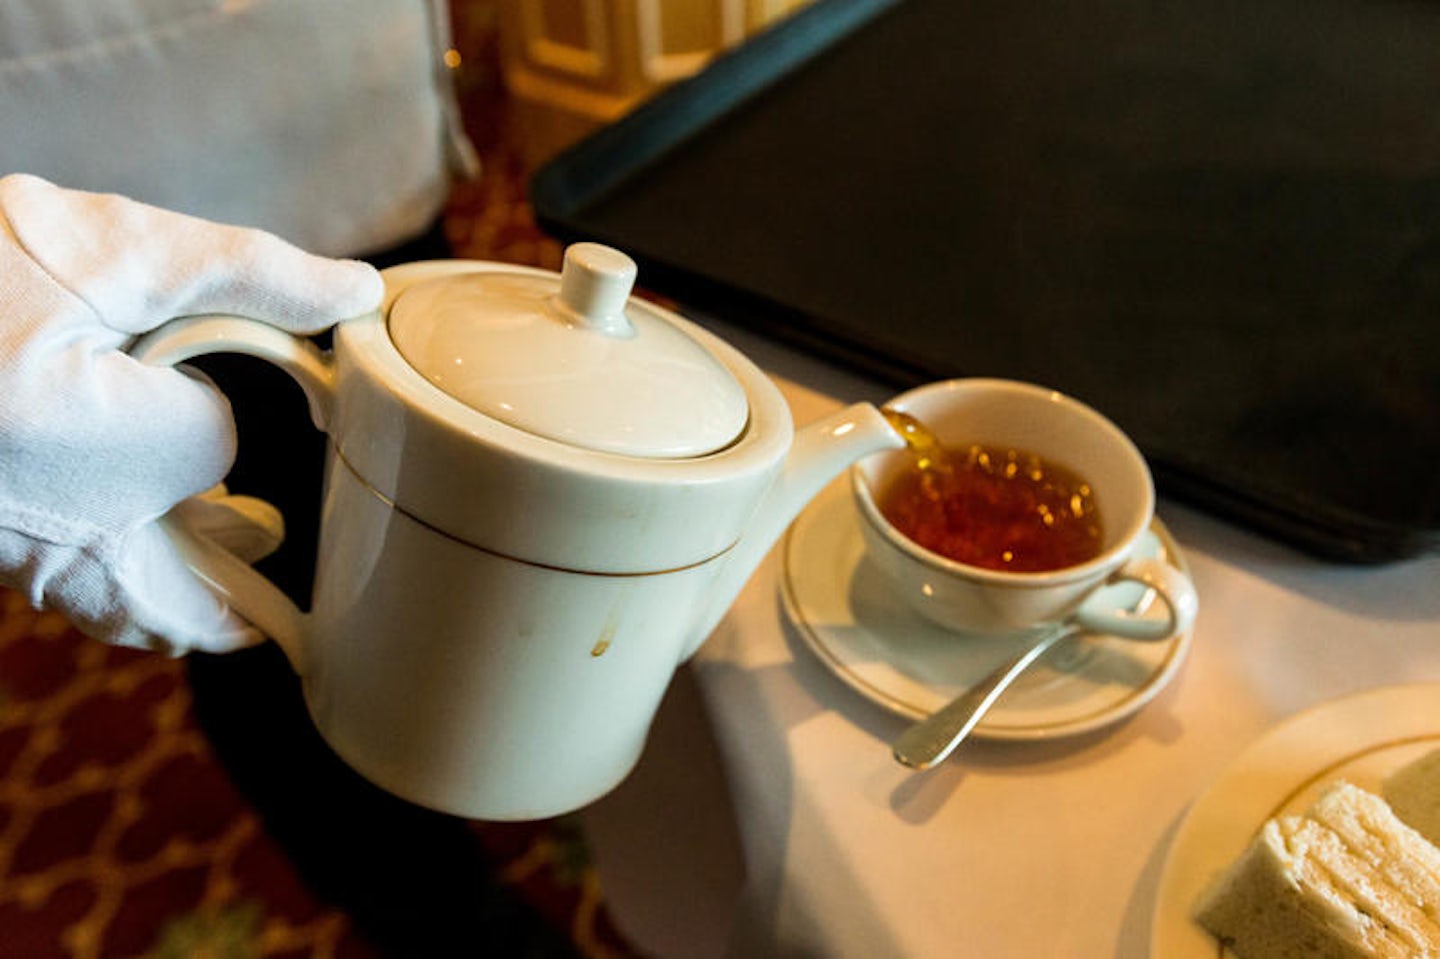 Afternoon Tea in the Queens Room on Queen Victoria